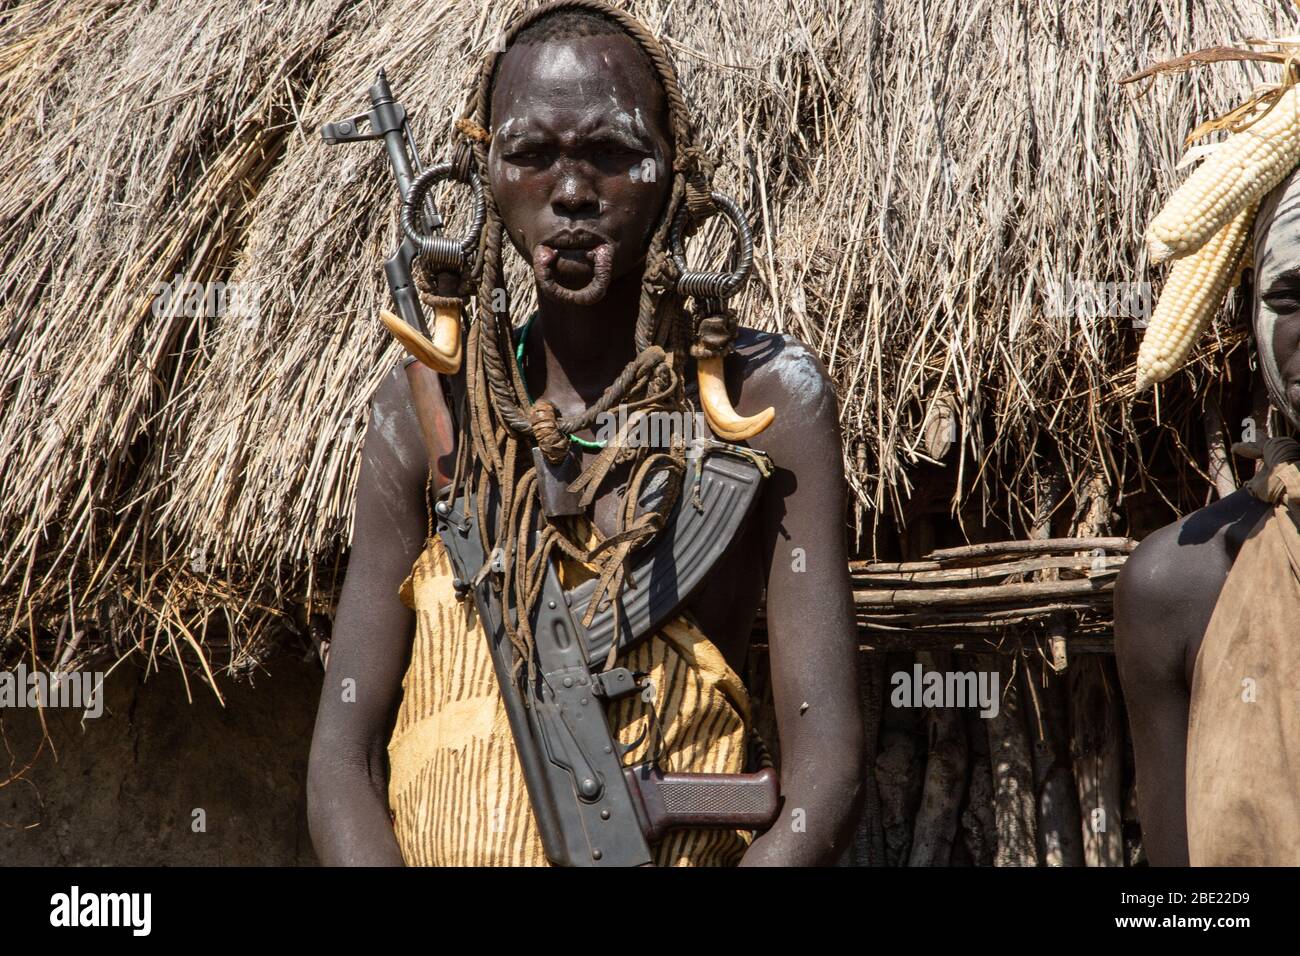 De la femme Mursi avec lèvre inférieure allongée d'organiser un disque d'argile comme ornamentstribe corps Debub Zone d'Omo, en Ethiopie. Près de la frontière soudanaise. Banque D'Images